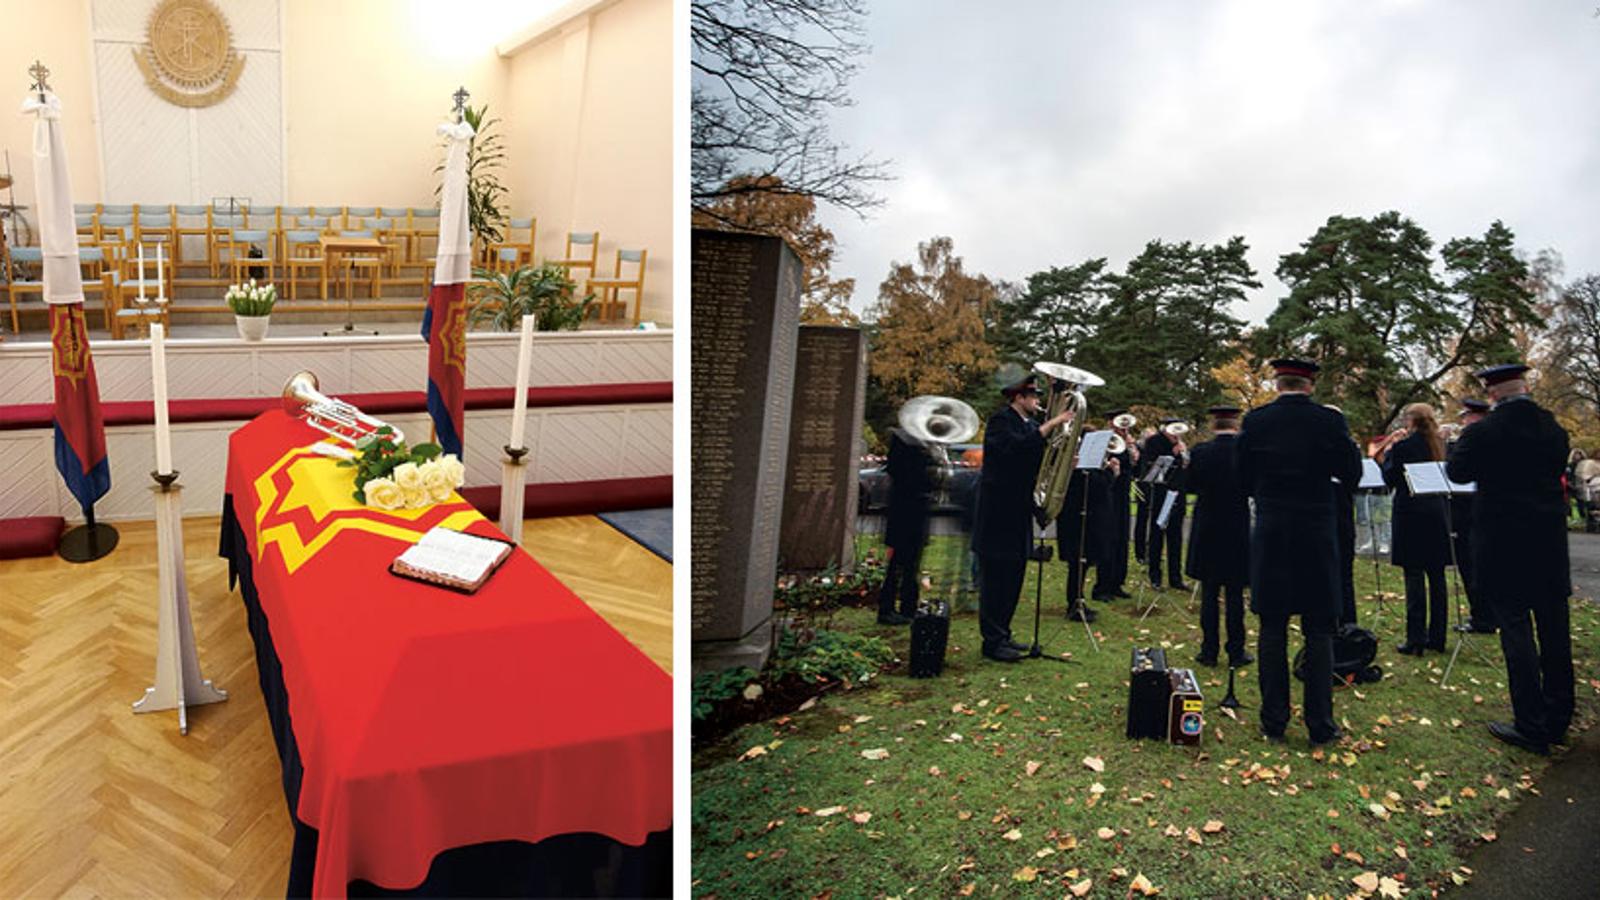 Till vänster: Sten-Erics kista. På kistan ligger Frälsningsarméns flagga, en trumpet och en bukett vita rosor. Till höger: Gudstjänst på allhelgonadagen vid Frälsningsarméns officersgravar i Stockholm. 